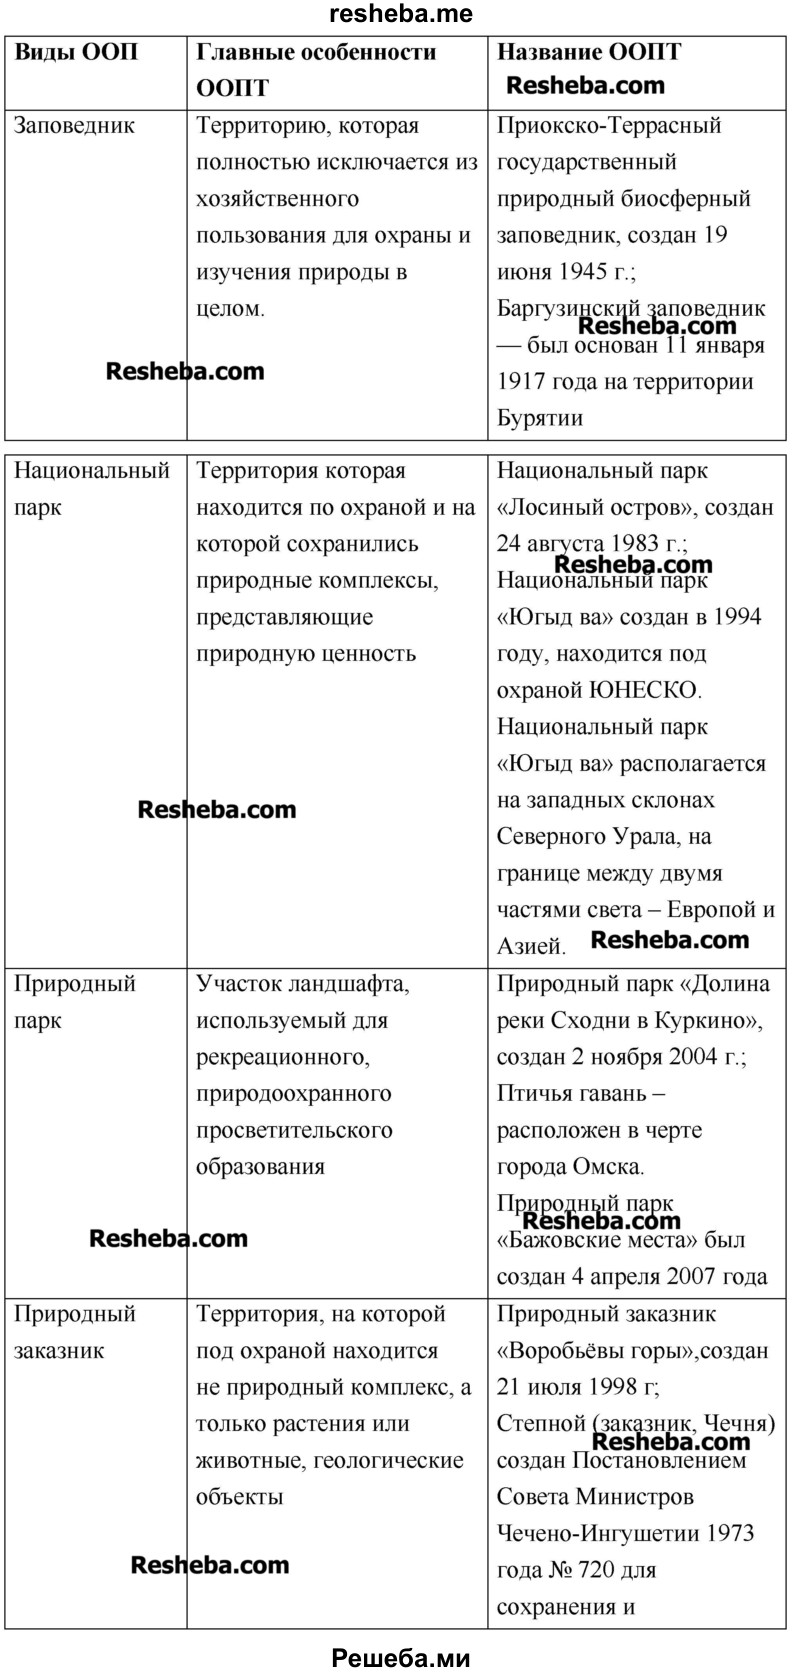 Заполни таблицу (в таблице приведены примеры для Москвы и Московской области)